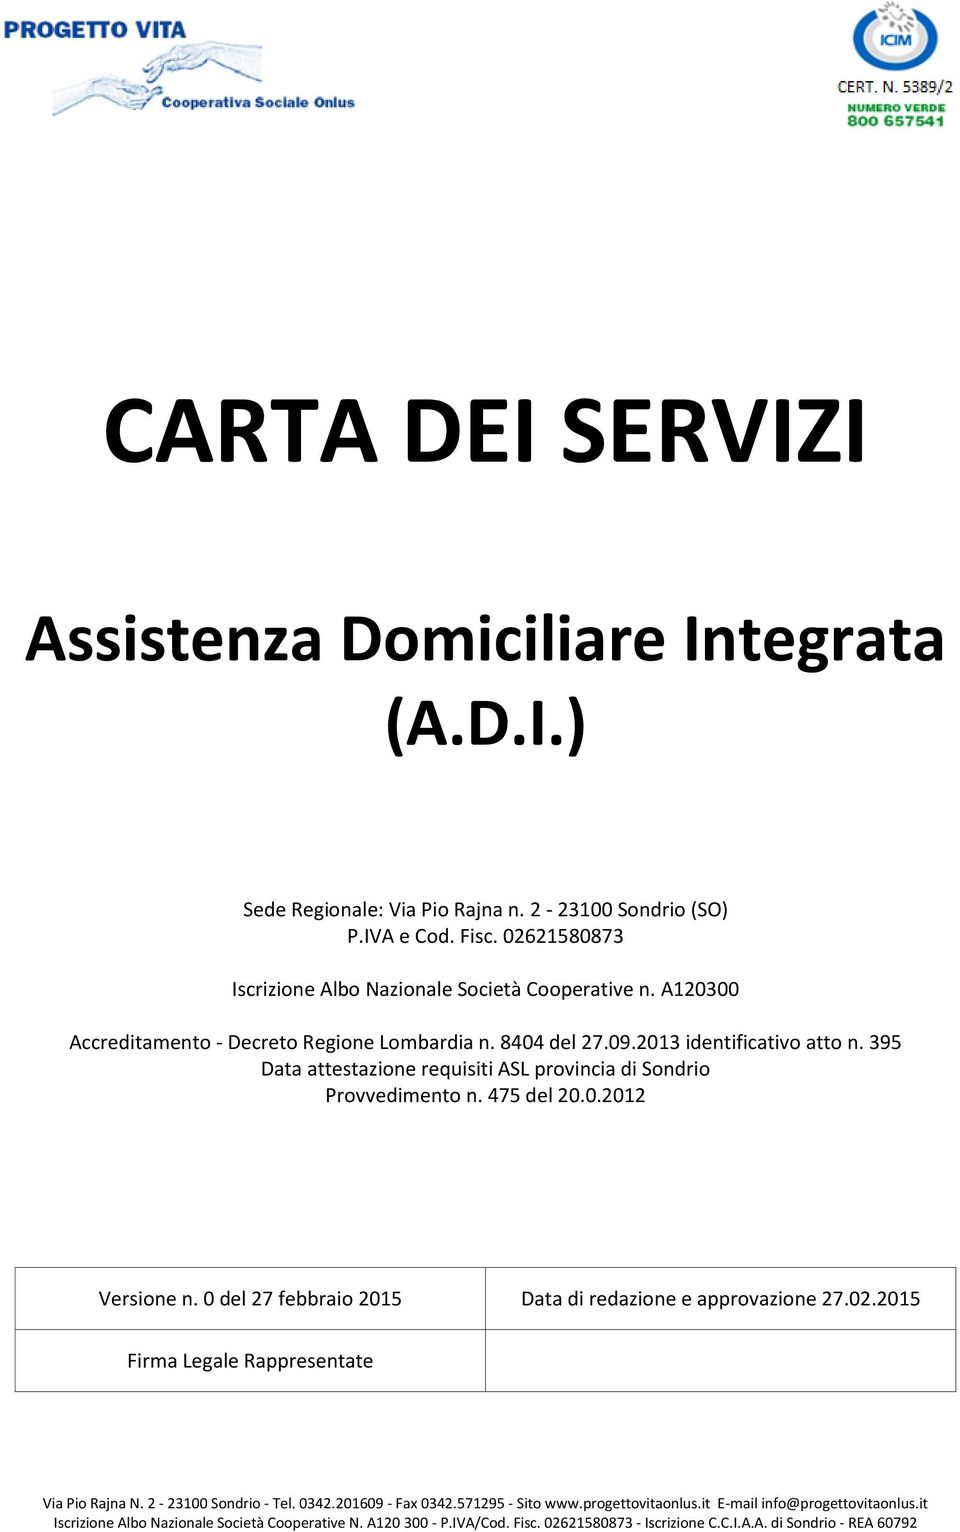 A120300 Accreditamento - Decreto Regione Lombardia n. 8404 del 27.09.2013 identificativo atto n.